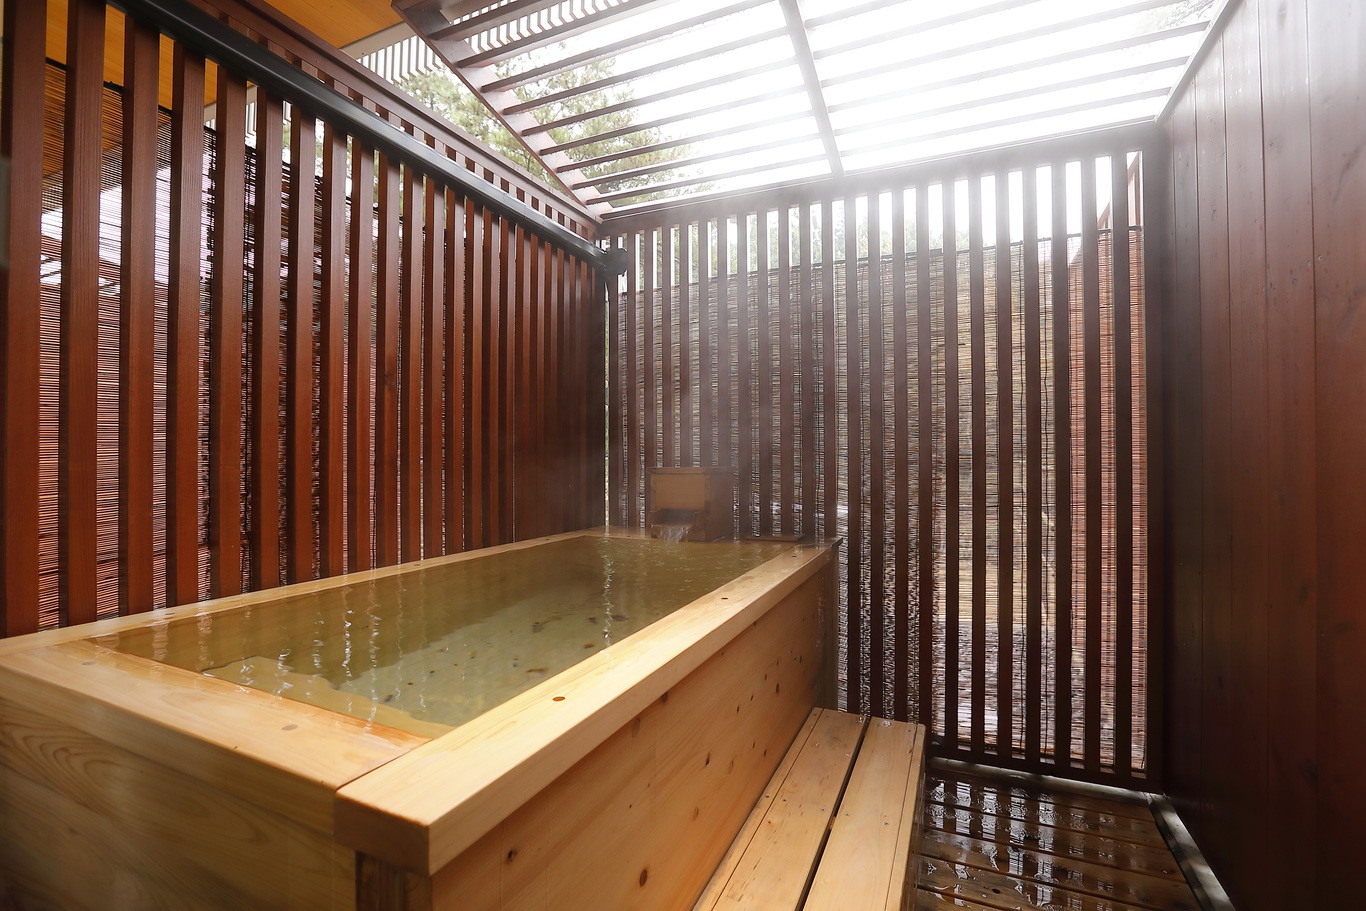 檜の露天風呂